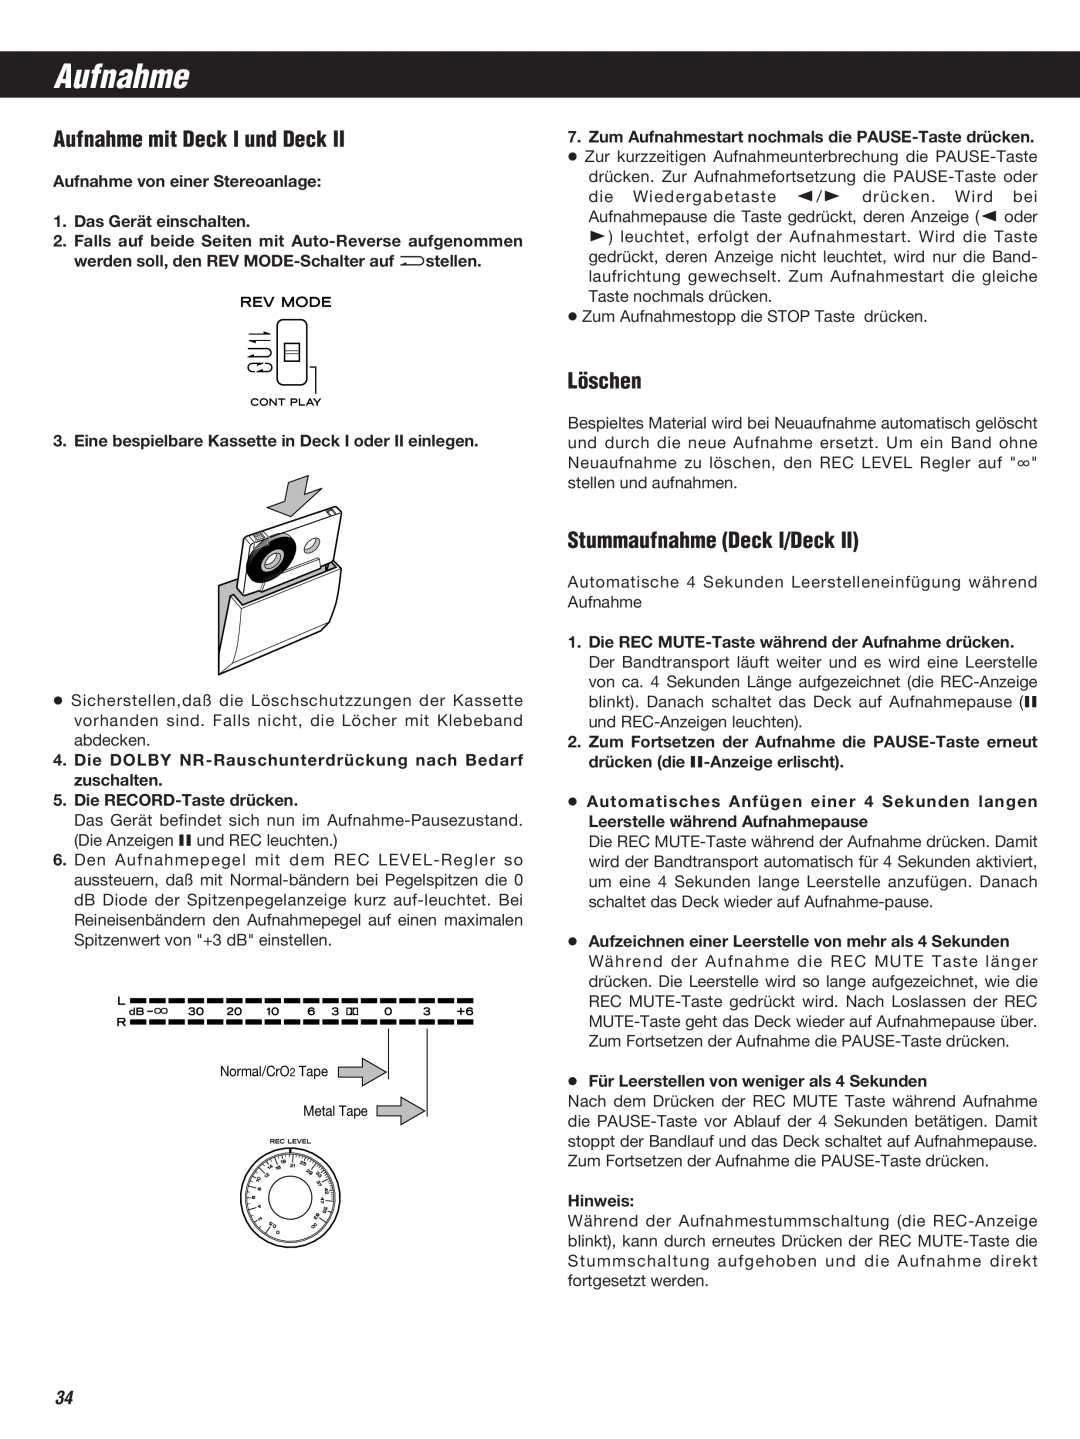 Teac W-860R owner manual Aufnahme mit Deck I und Deck, Löschen, Stummaufnahme Deck I/Deck 